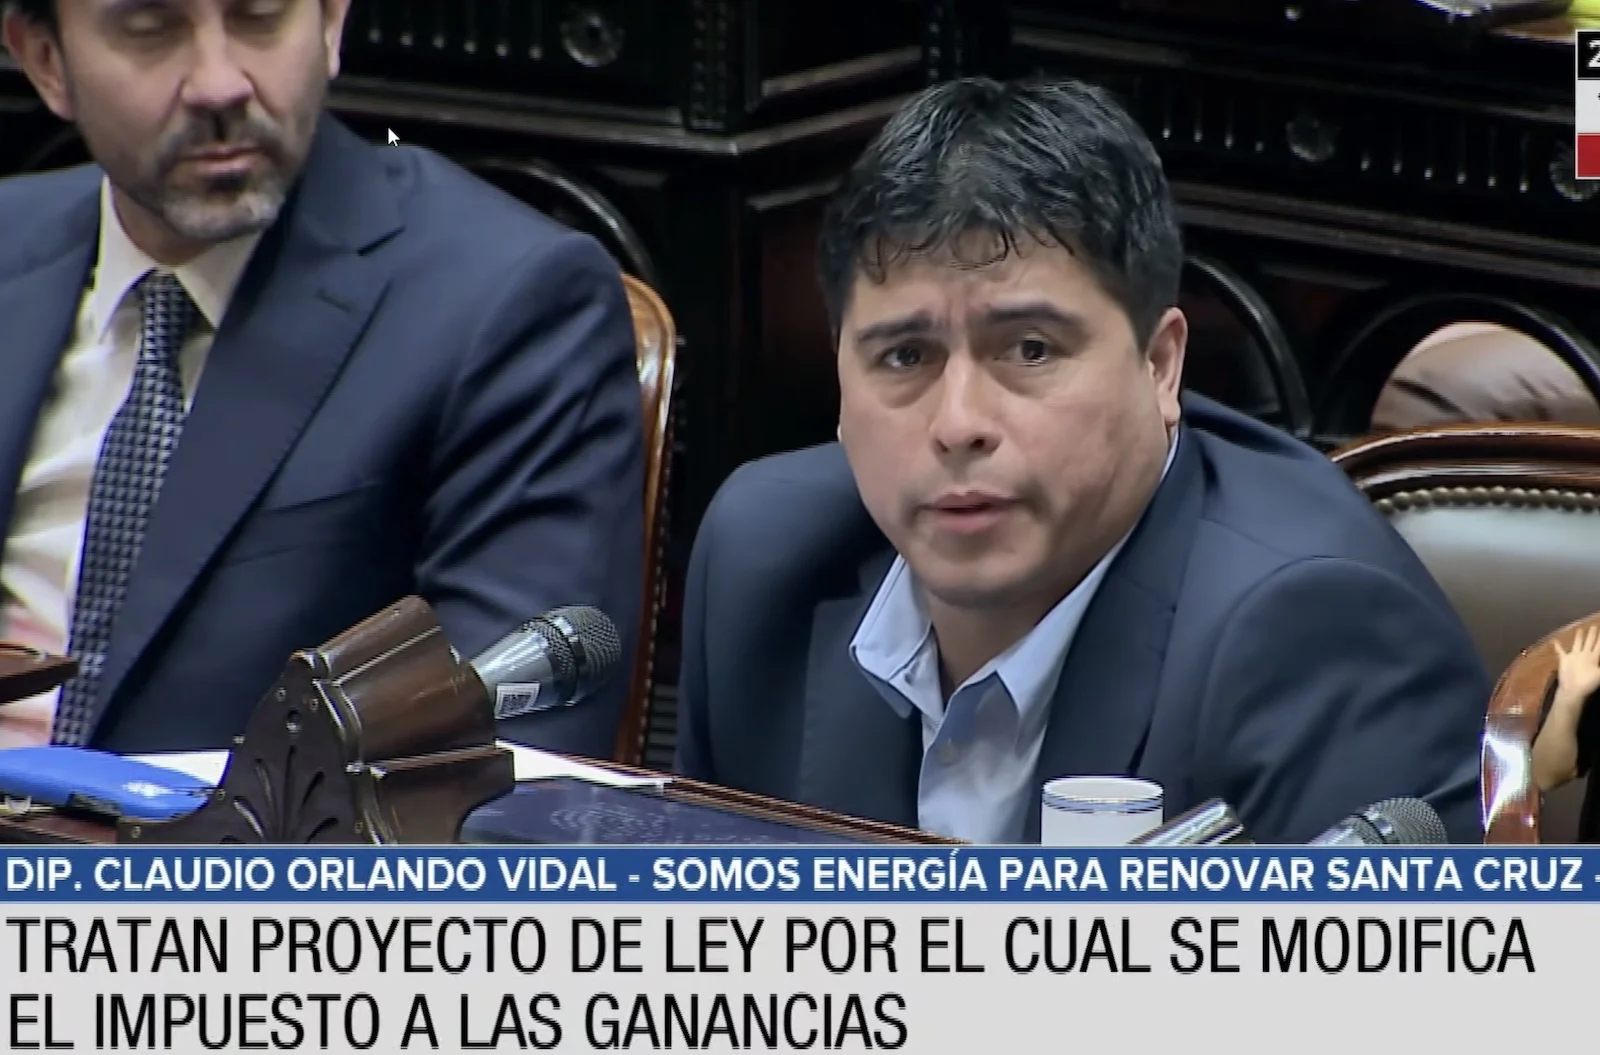 Claudio Vidal votó como petrolero el Impuesto a las Ganancias, ahora deberá explicar como Gobernador, por qué le restó a la provincia, fondos de la coparticipación